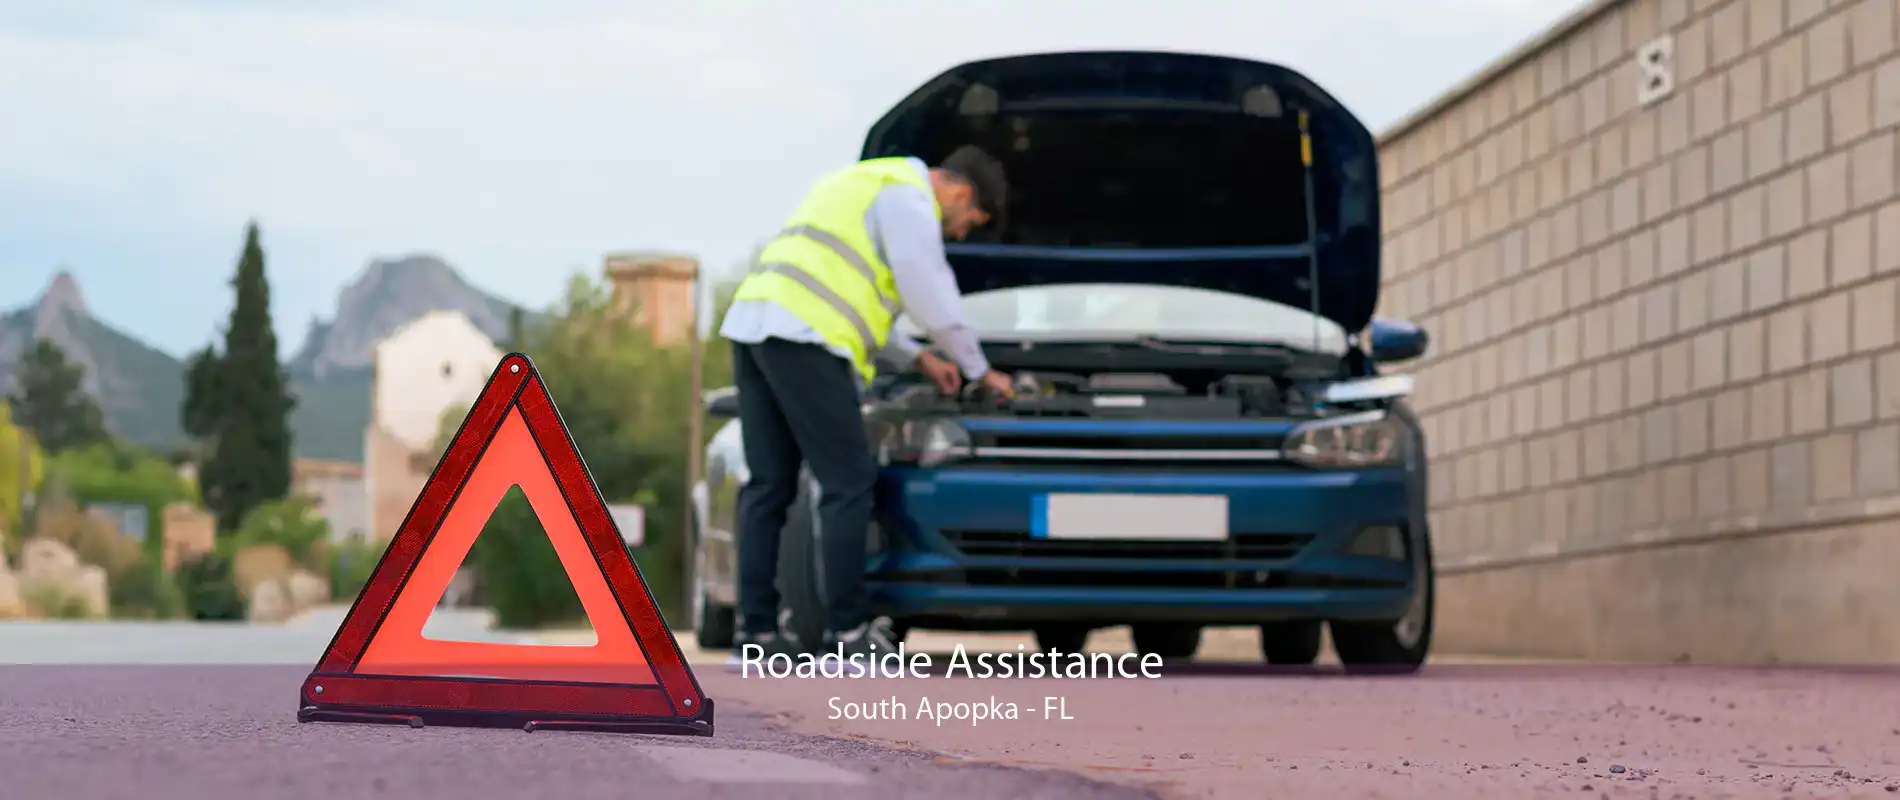 Roadside Assistance South Apopka - FL